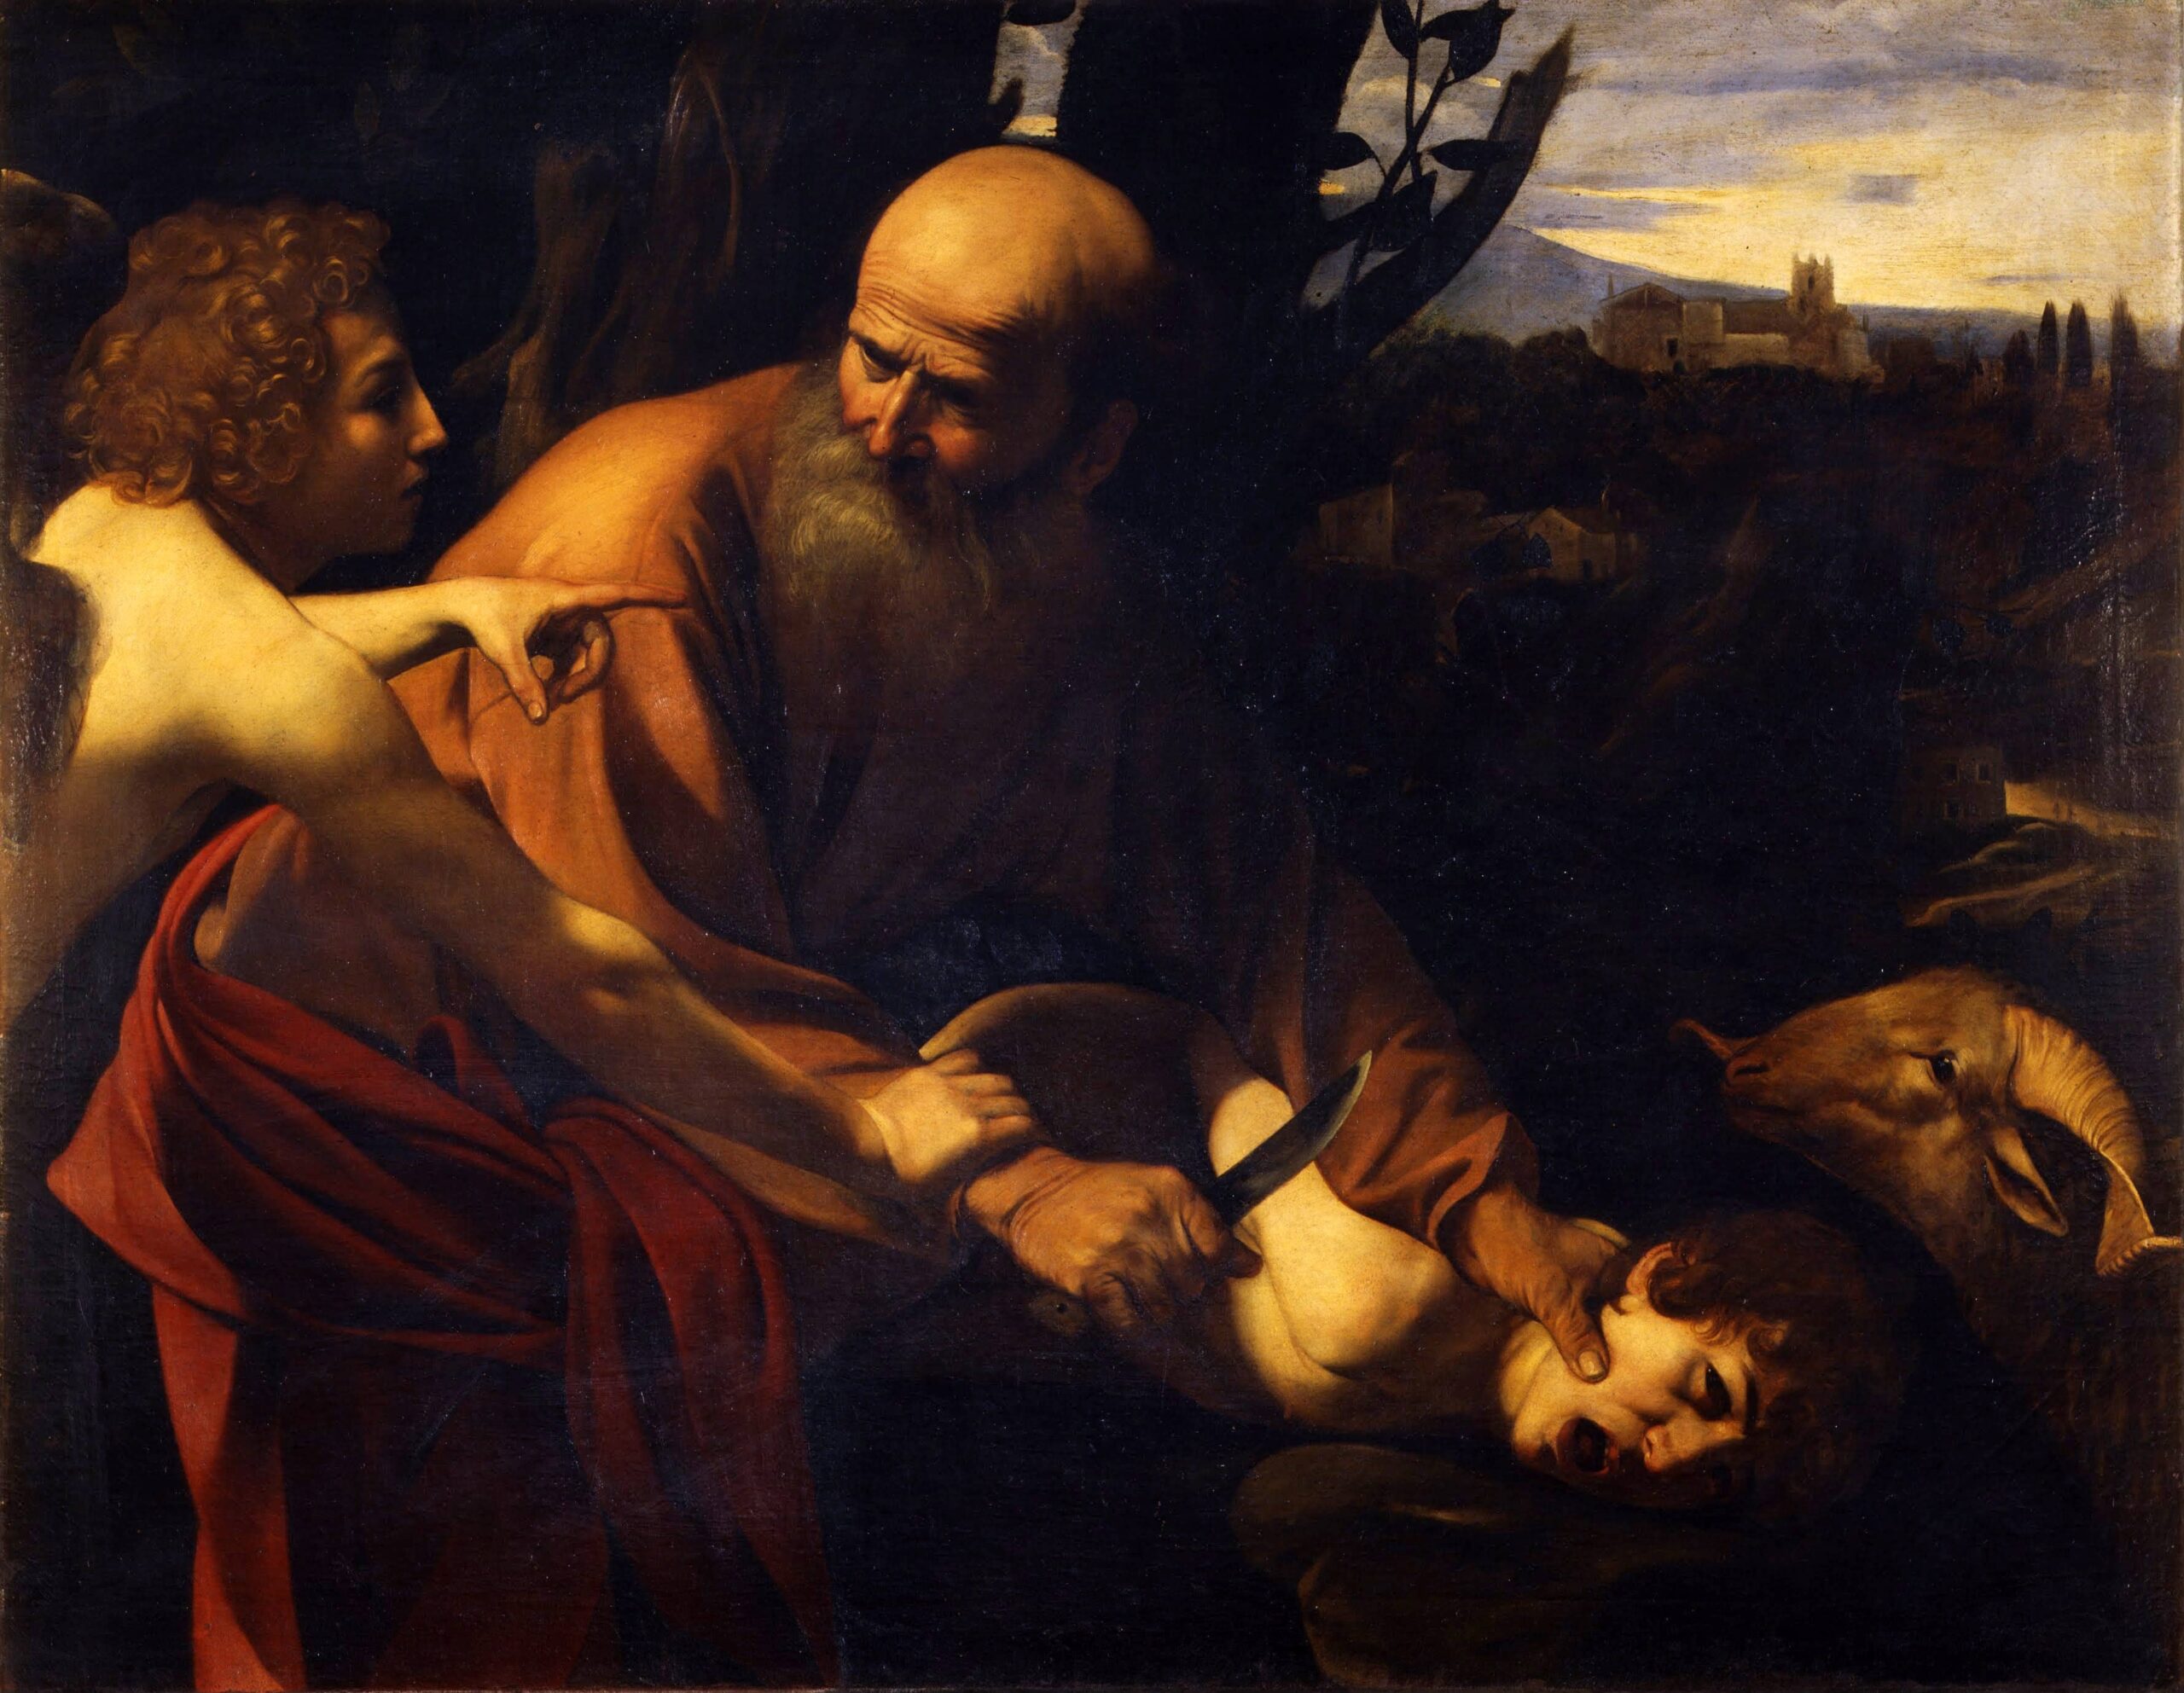 By Caravaggio, 1603, Uffizi, Florence